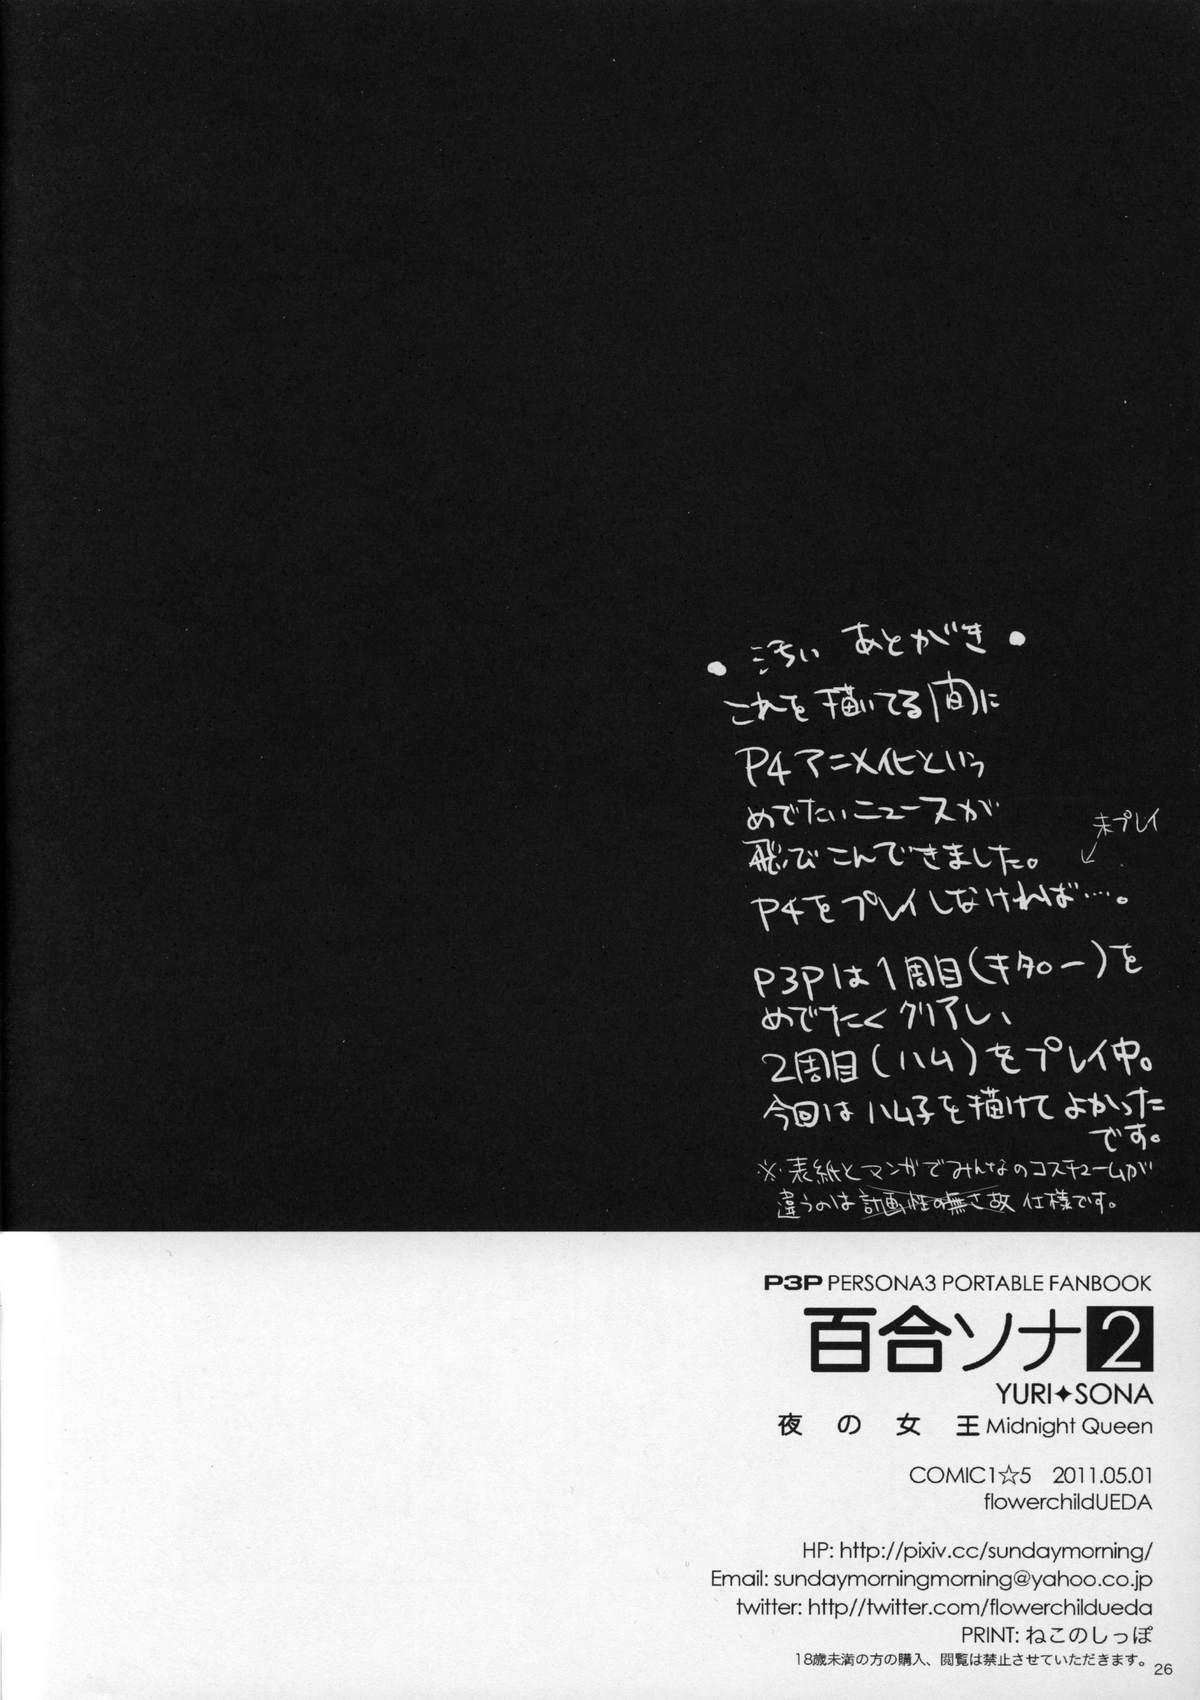 Sentones YURI SONA 2 Yoru no Joou - Midnight Queen - Persona 3 Hot Pussy - Page 25